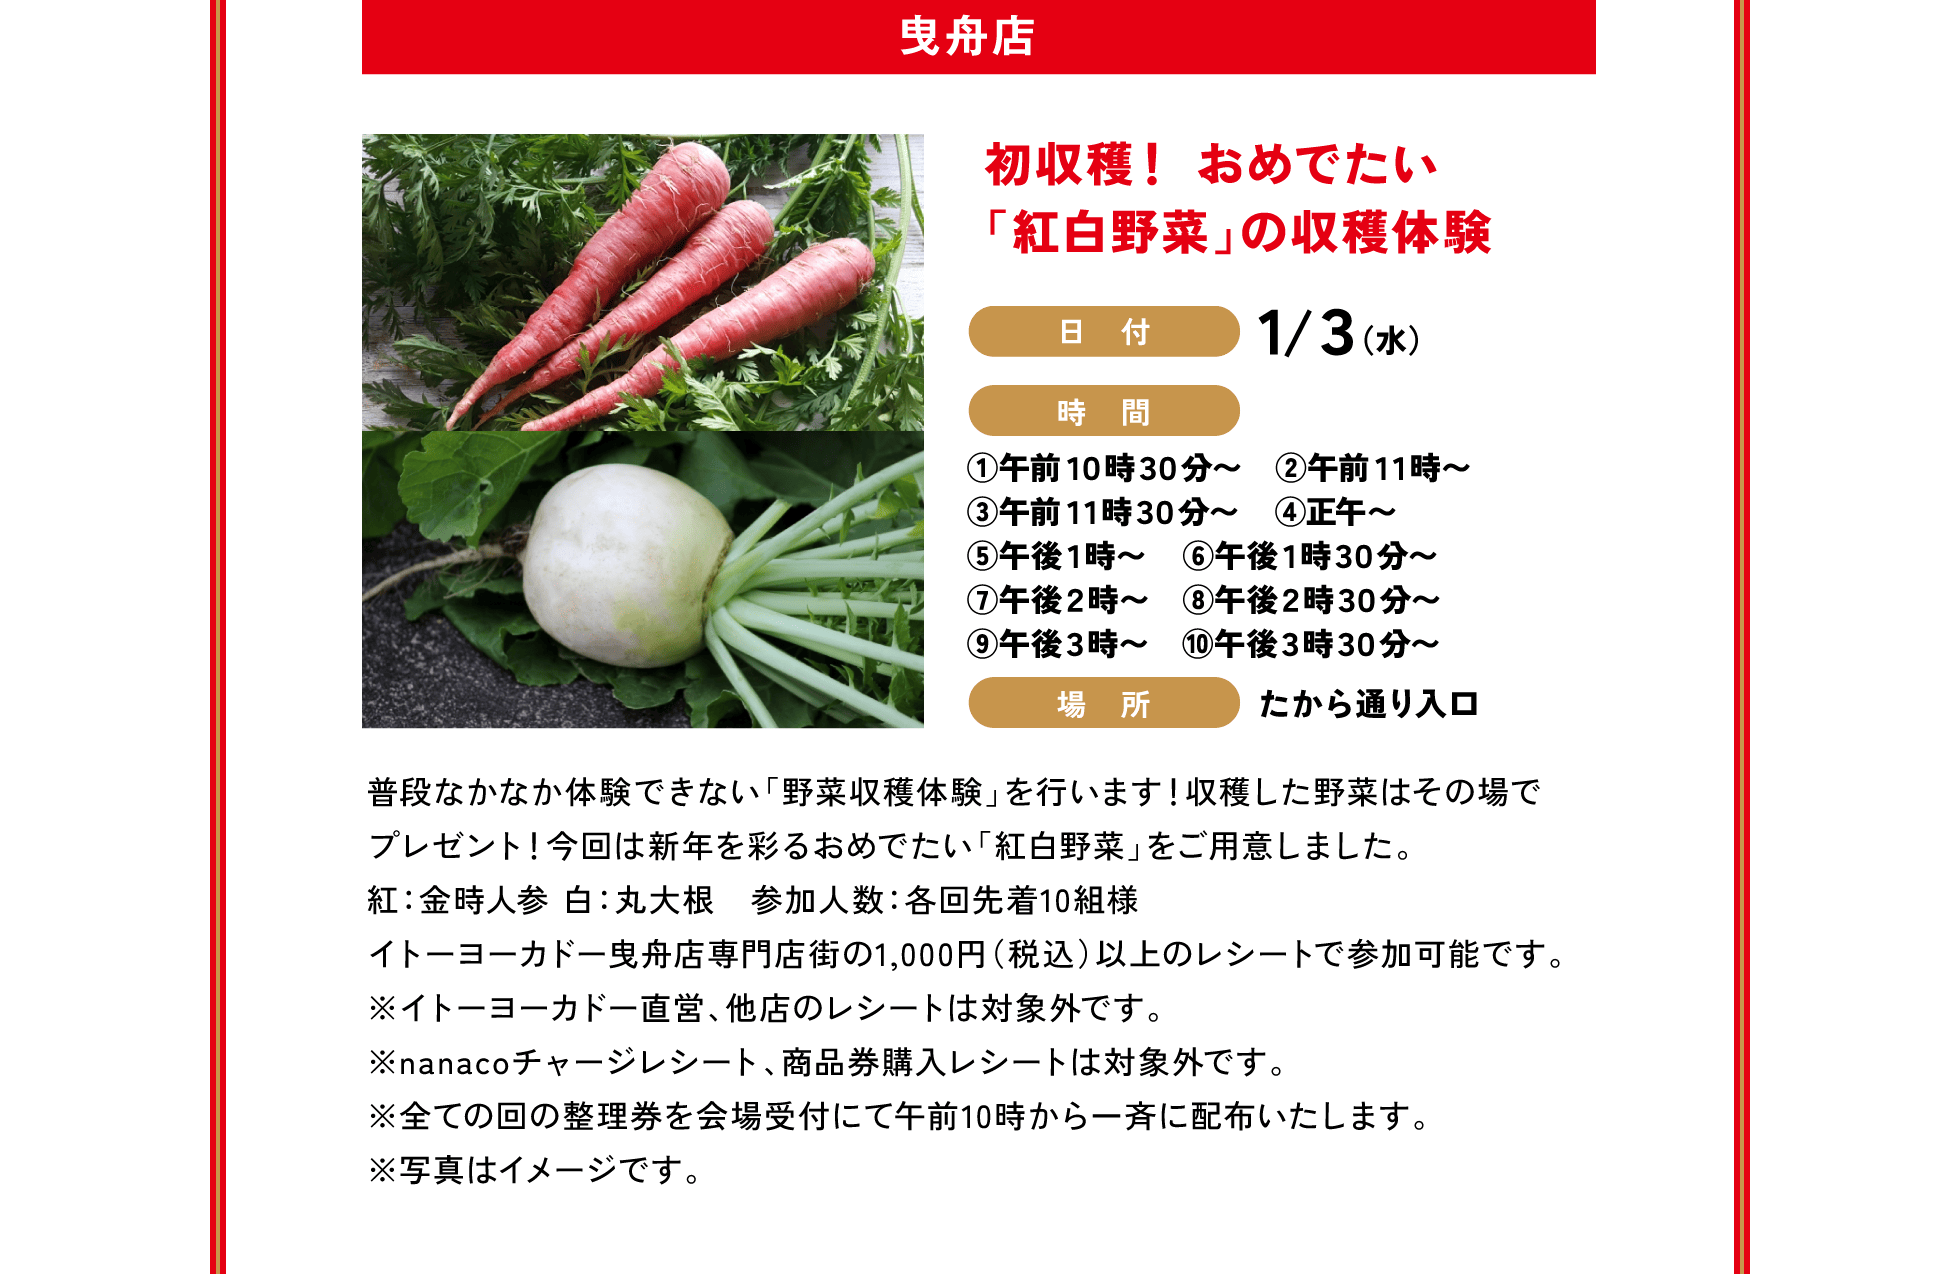 曳舟店 / 初収穫！ おめでたい「紅白野菜」の収穫体験